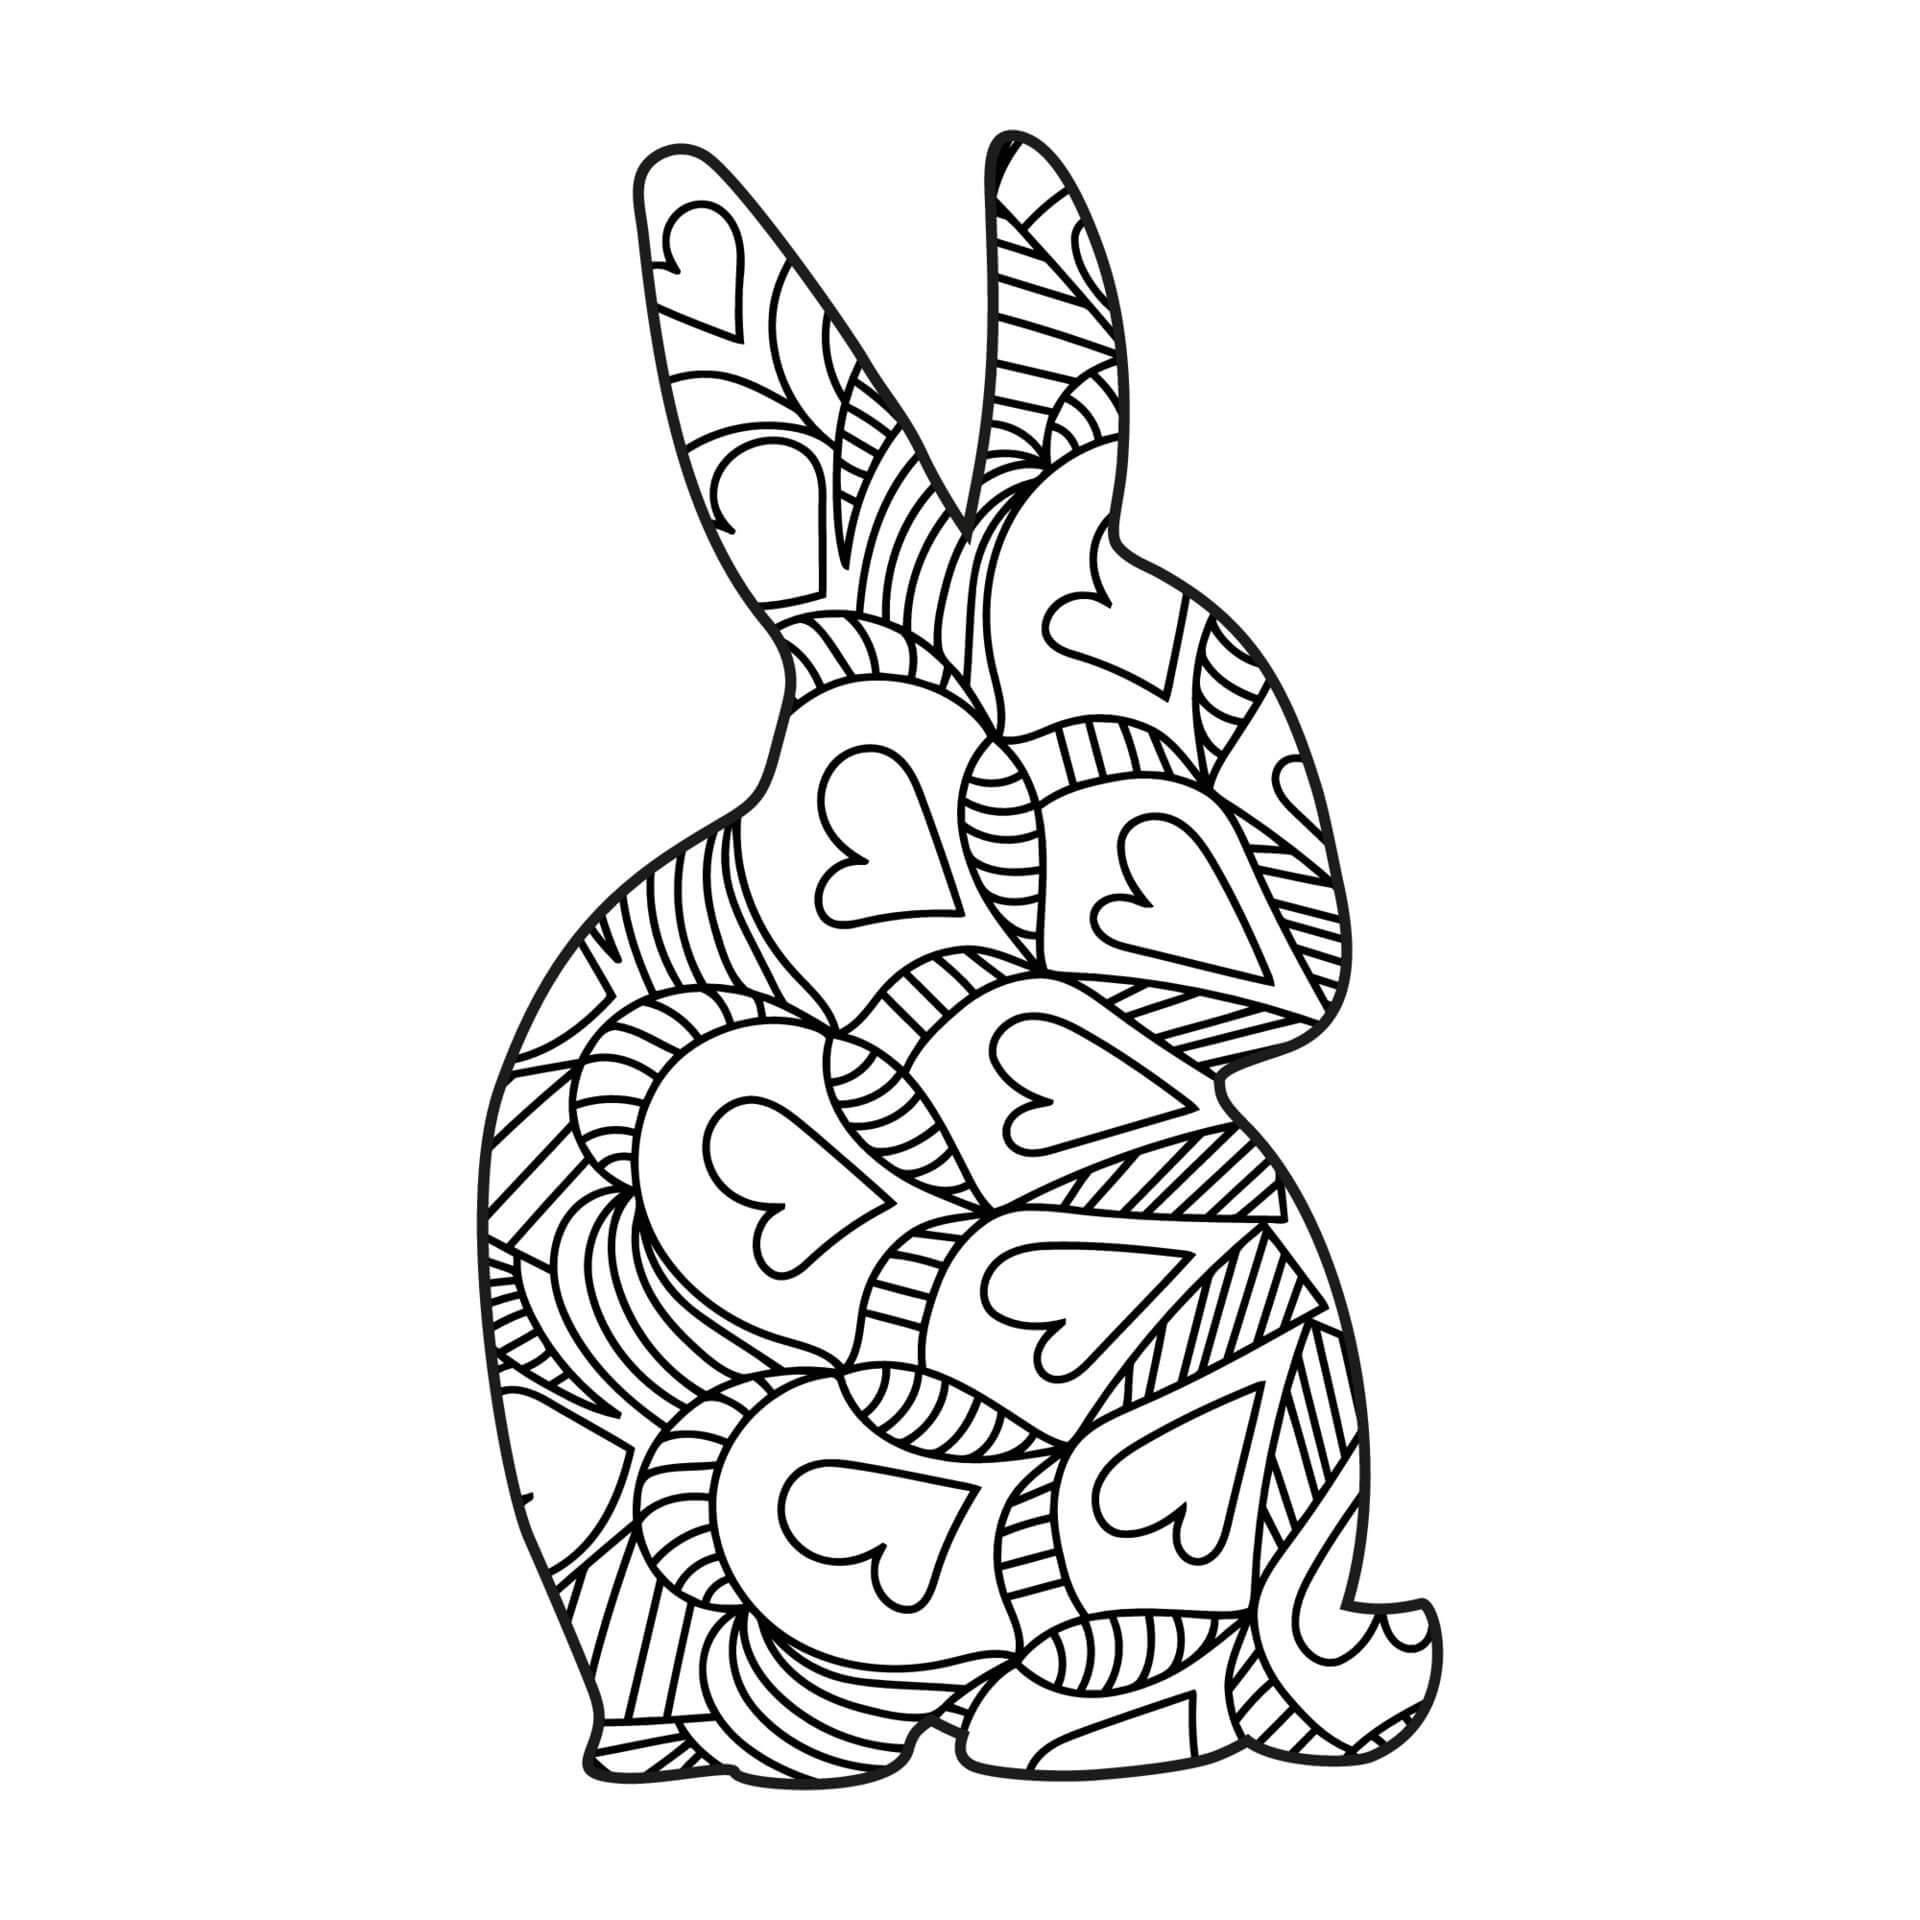 Mandala Cute Rabbit With Hearts Coloring Page Mandalas